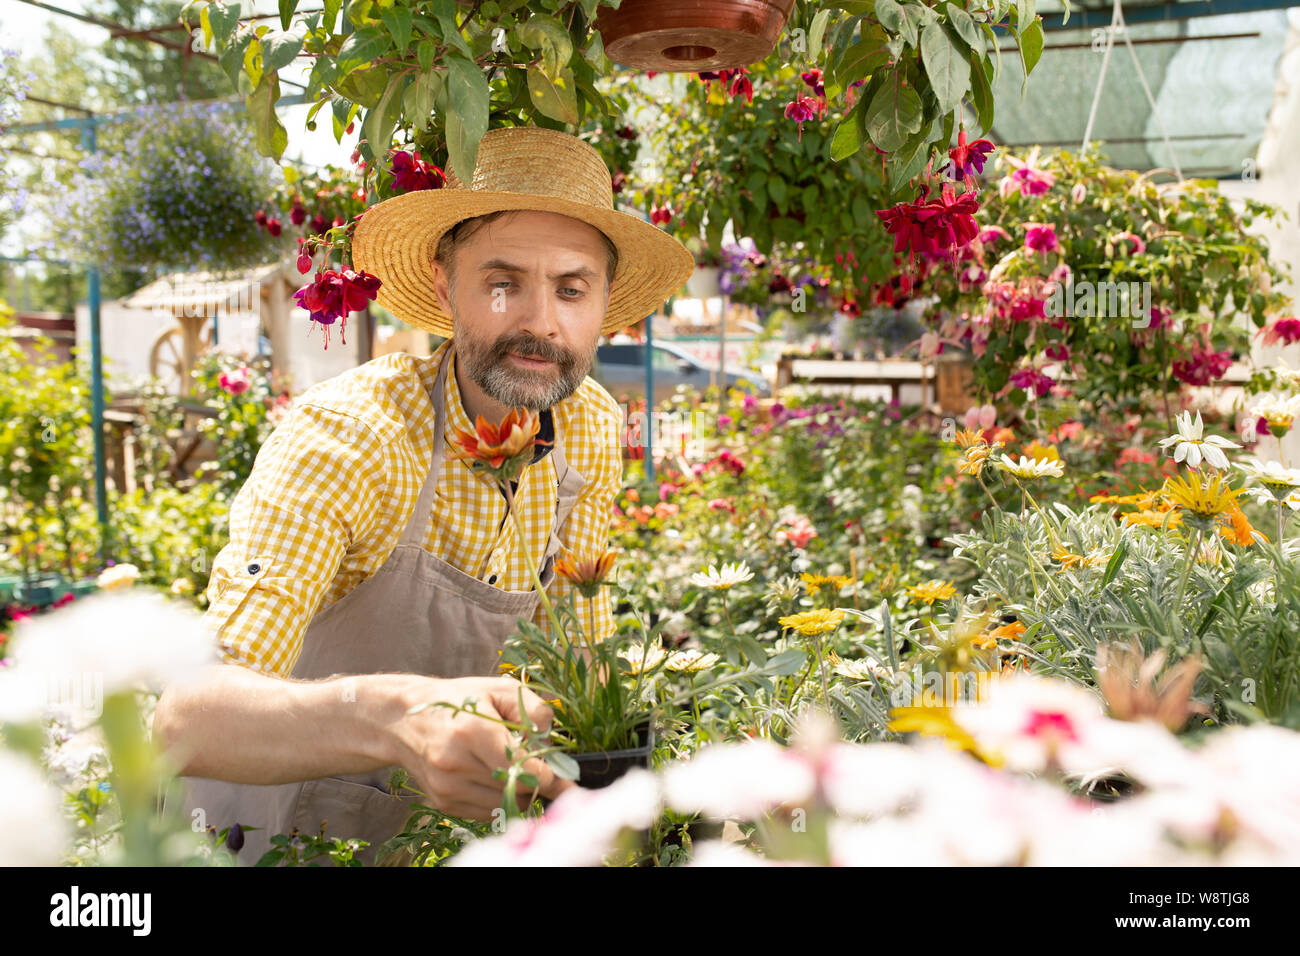 Agriculteur ou jardinier dans mature workwear holding pot avec fleur Banque D'Images